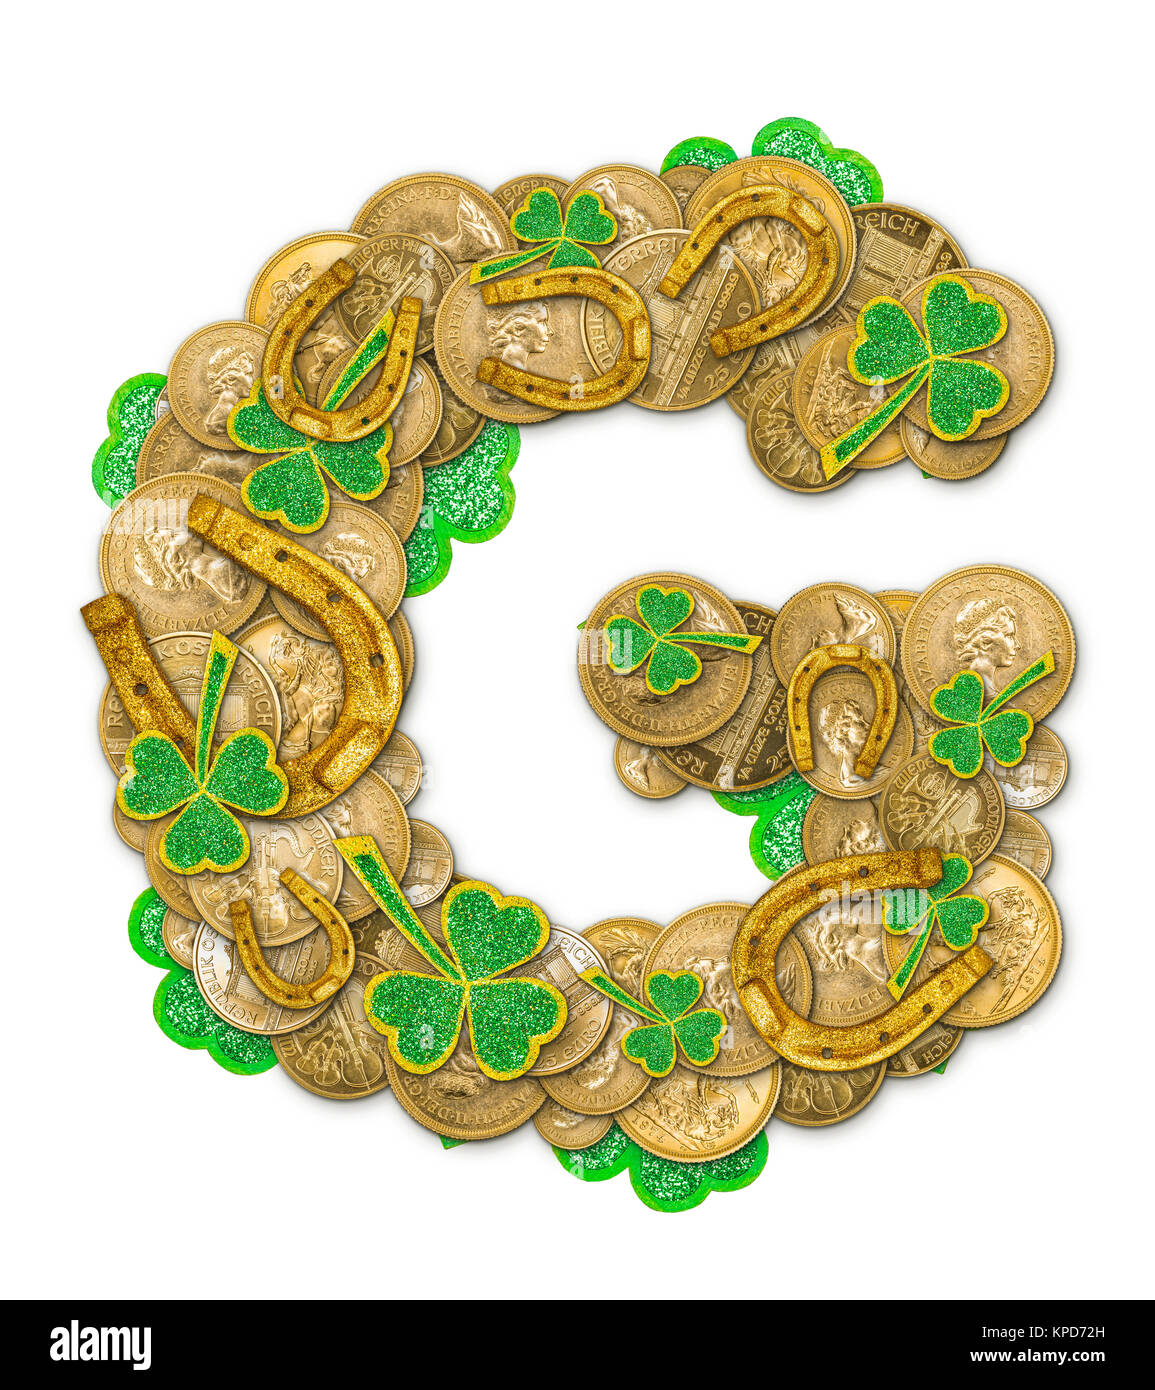 St. Patricks Day Feiertag Buchstabe G Stockfotografie - Alamy